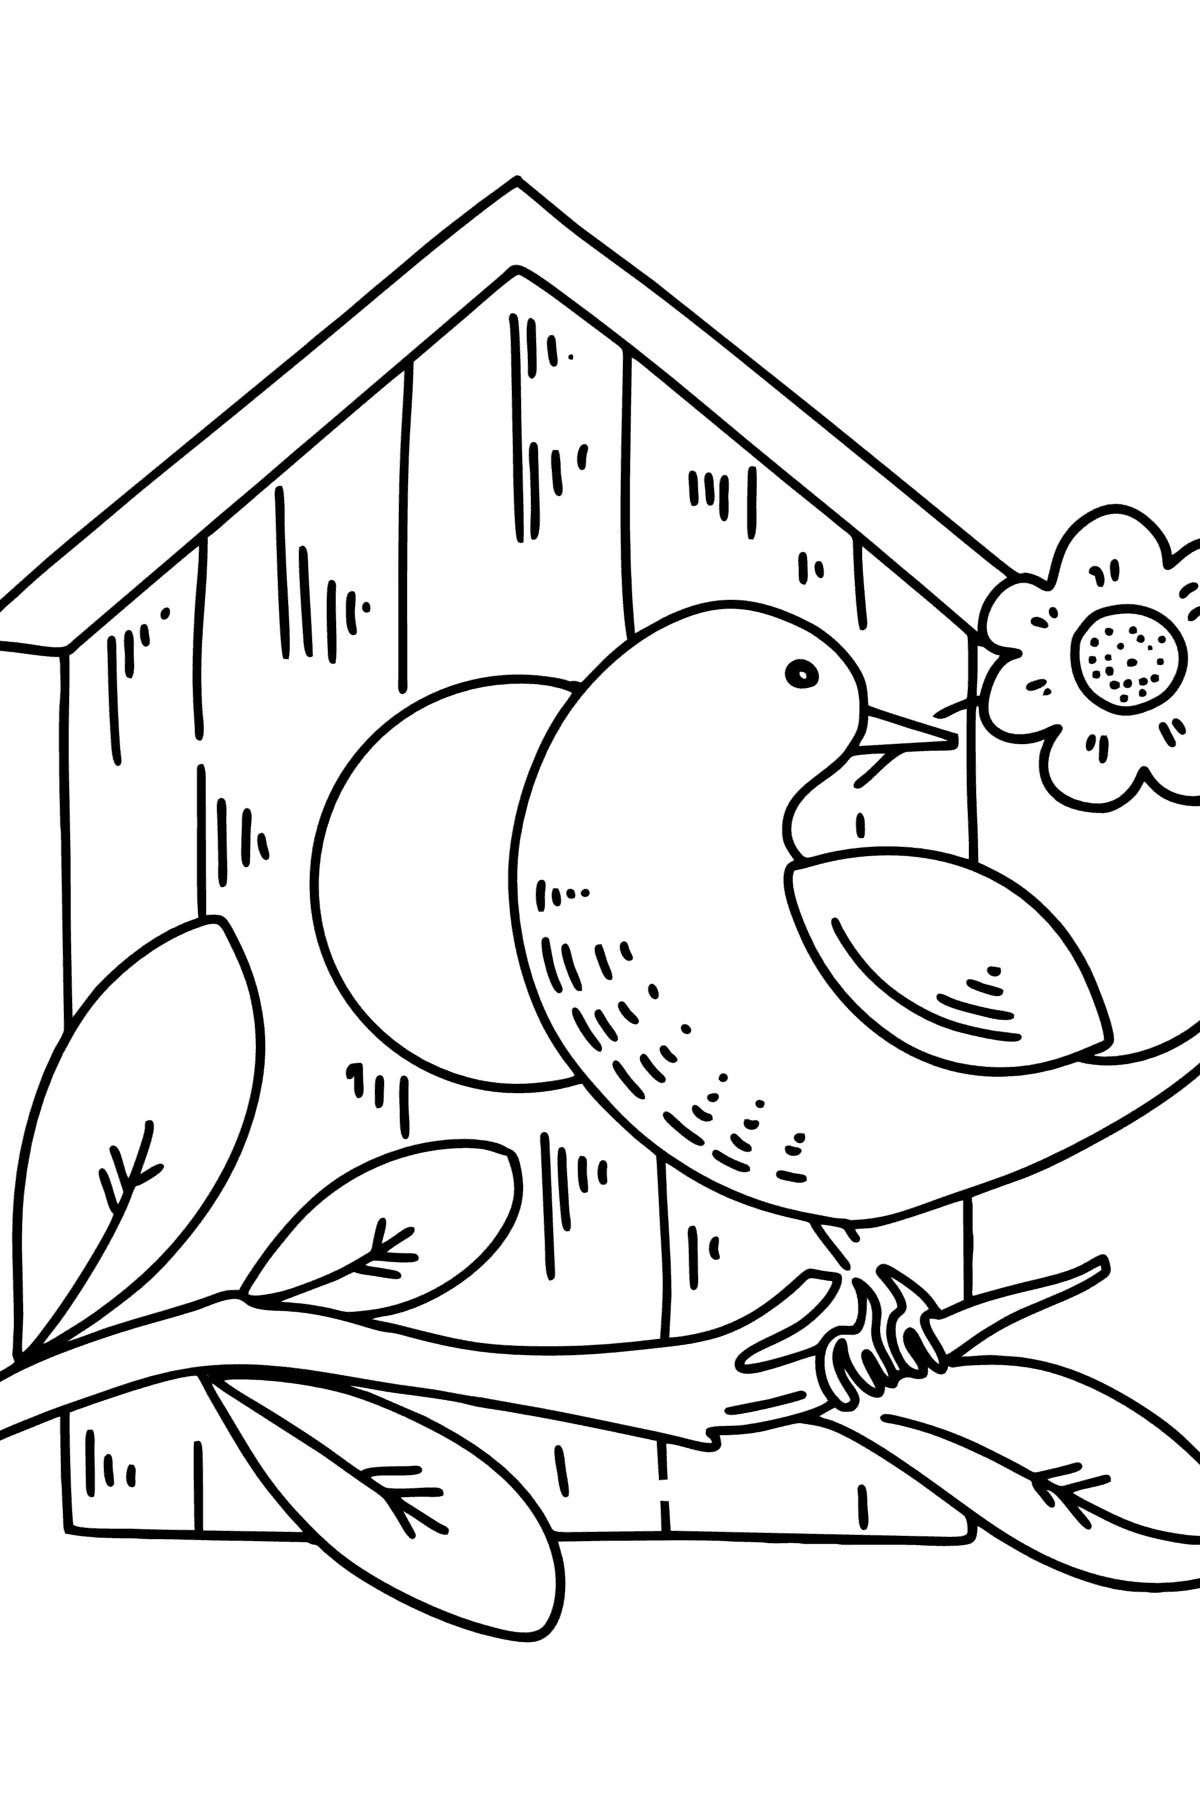 Coloriage - Starling au nichoir - Coloriages pour les Enfants